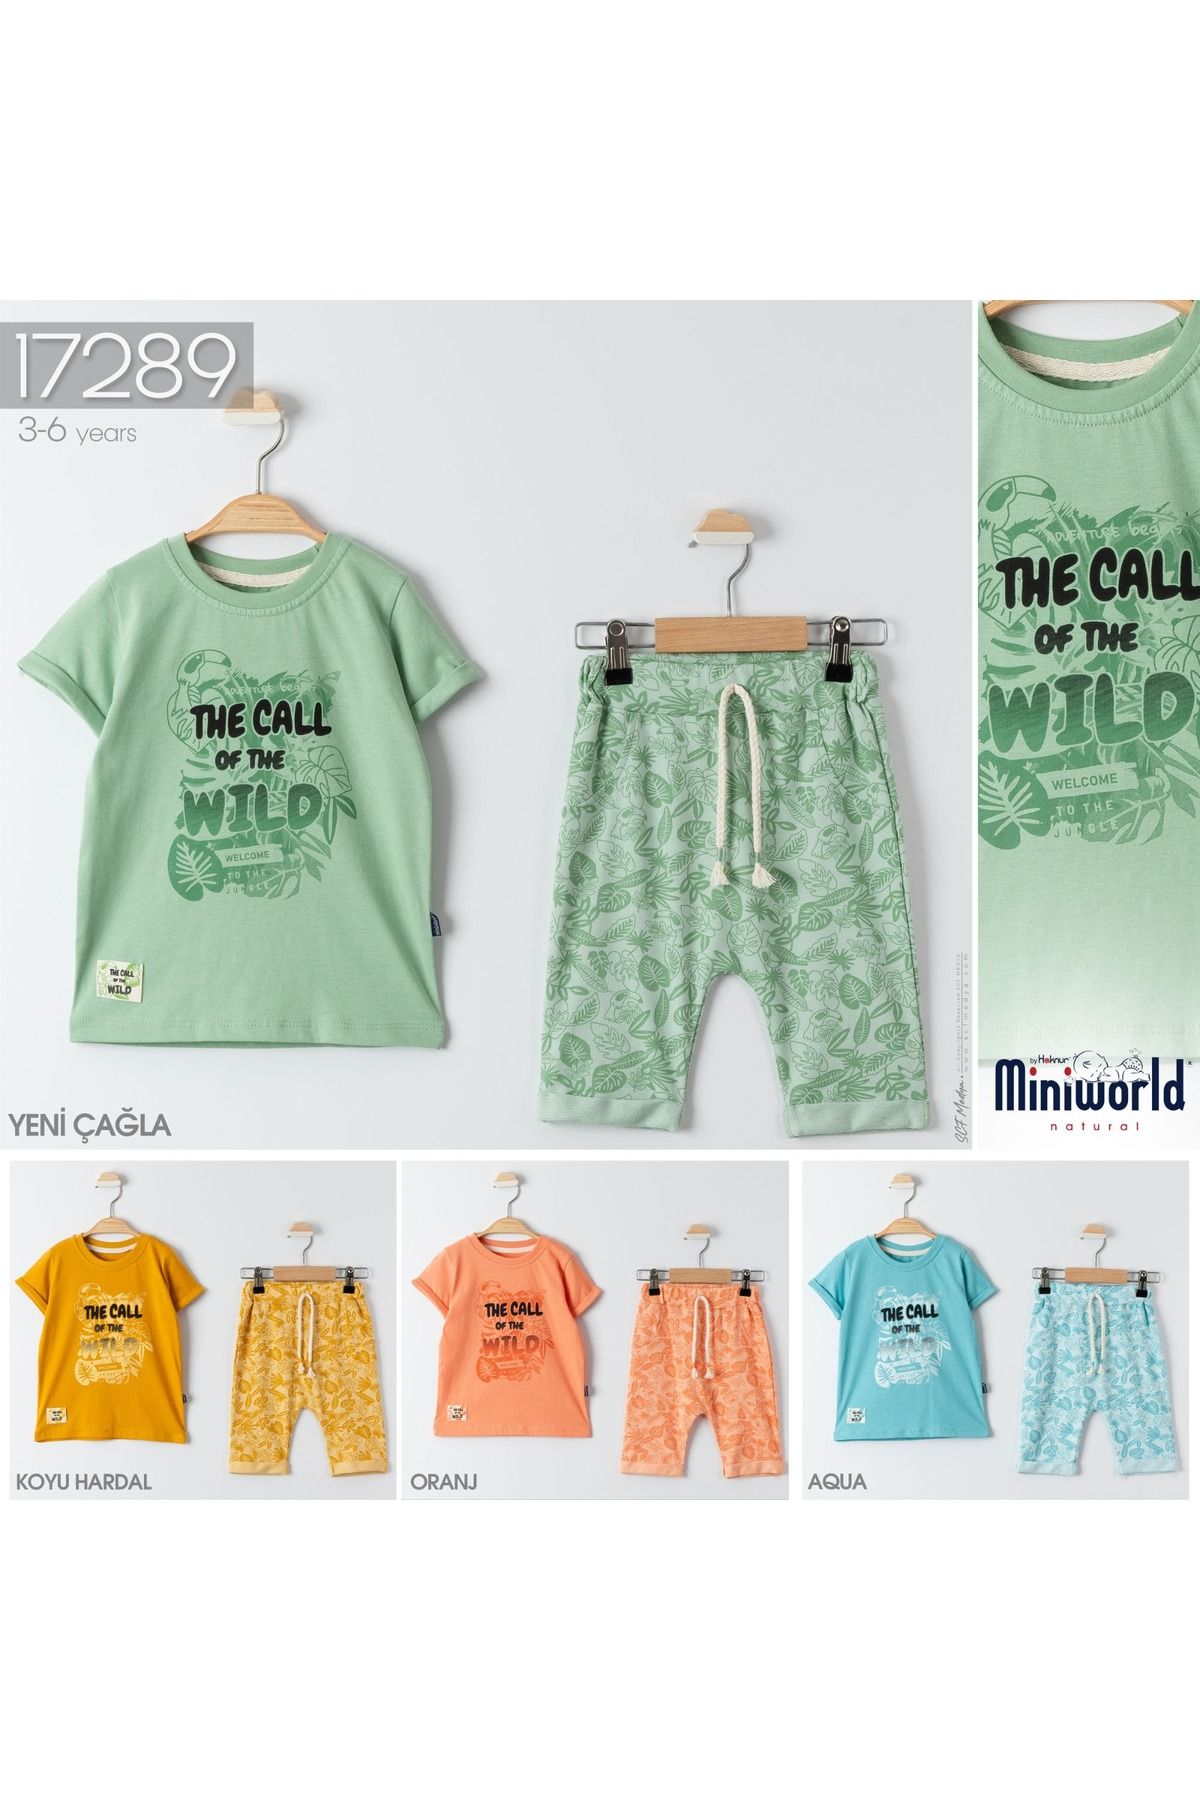 Miniworld bebek kıyafetleri